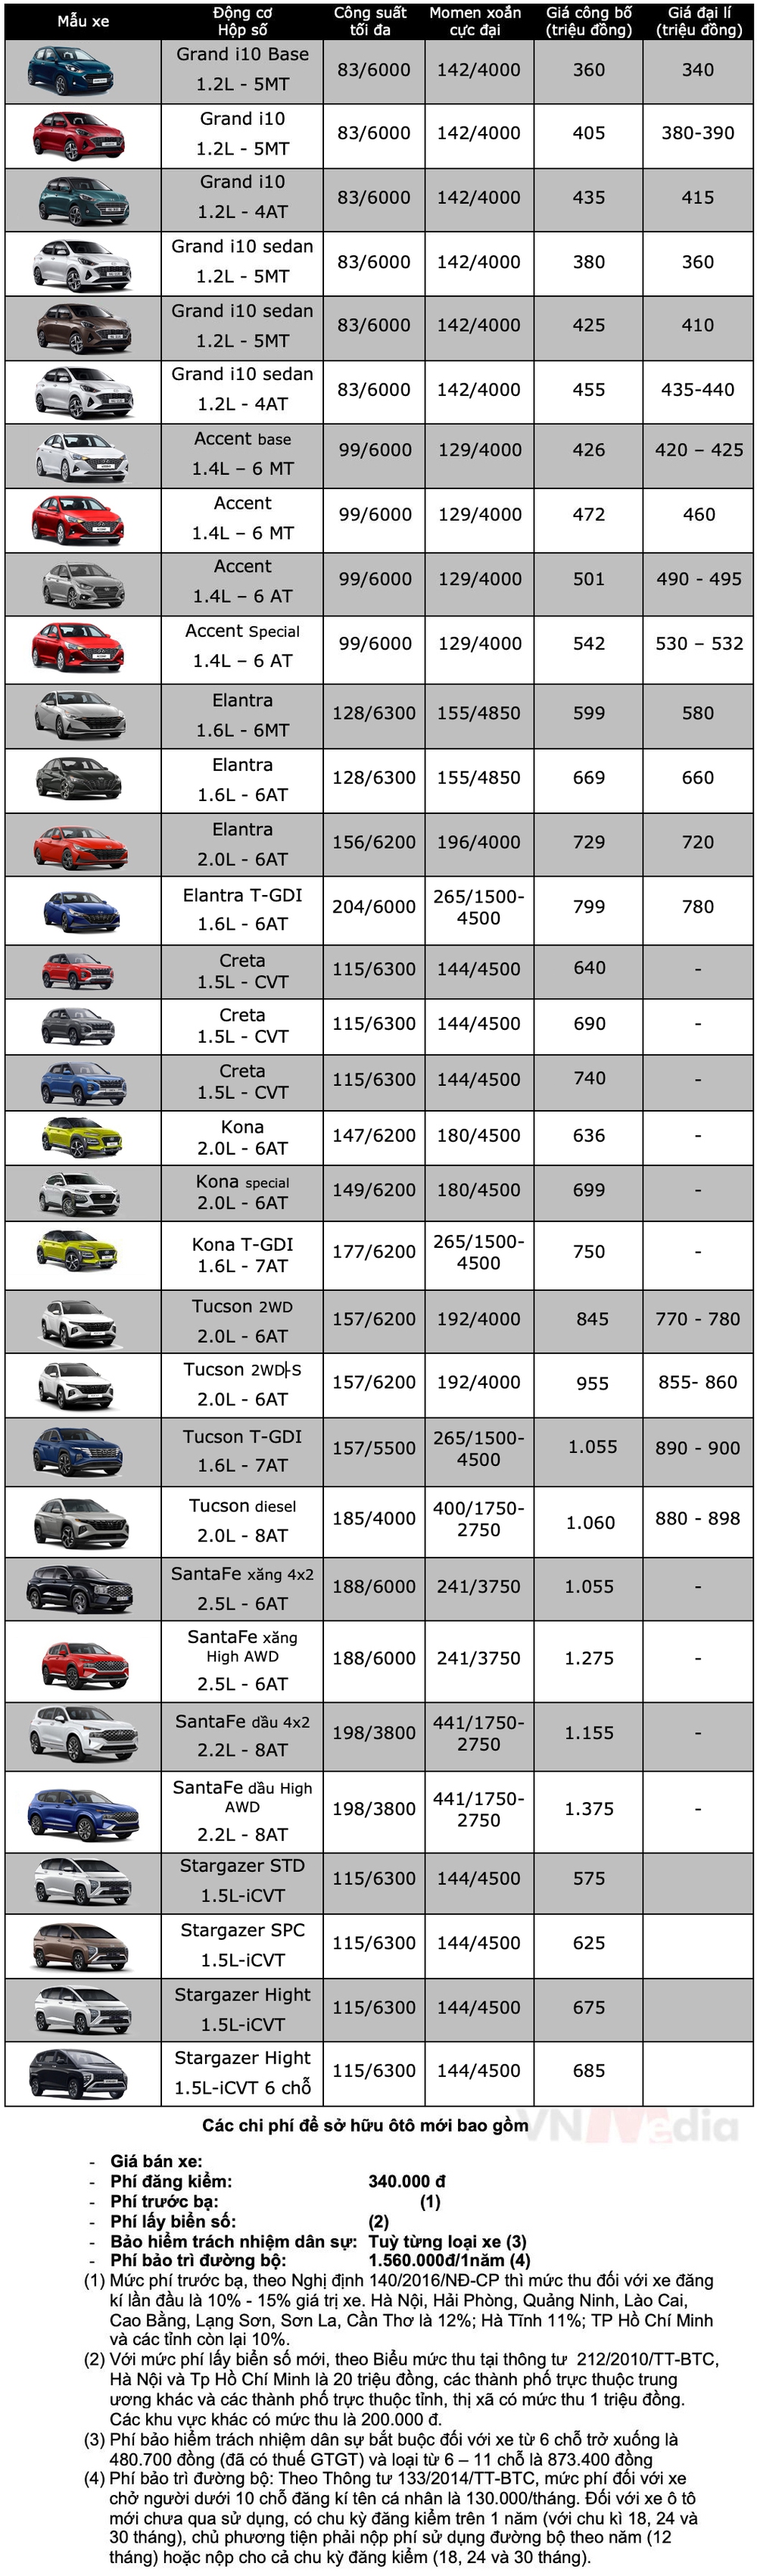 Bảng giá xe Hyundai tháng 12: Hyundai Grand i10 tiếp tục được giảm 15 triệu đồng - Ảnh 2.